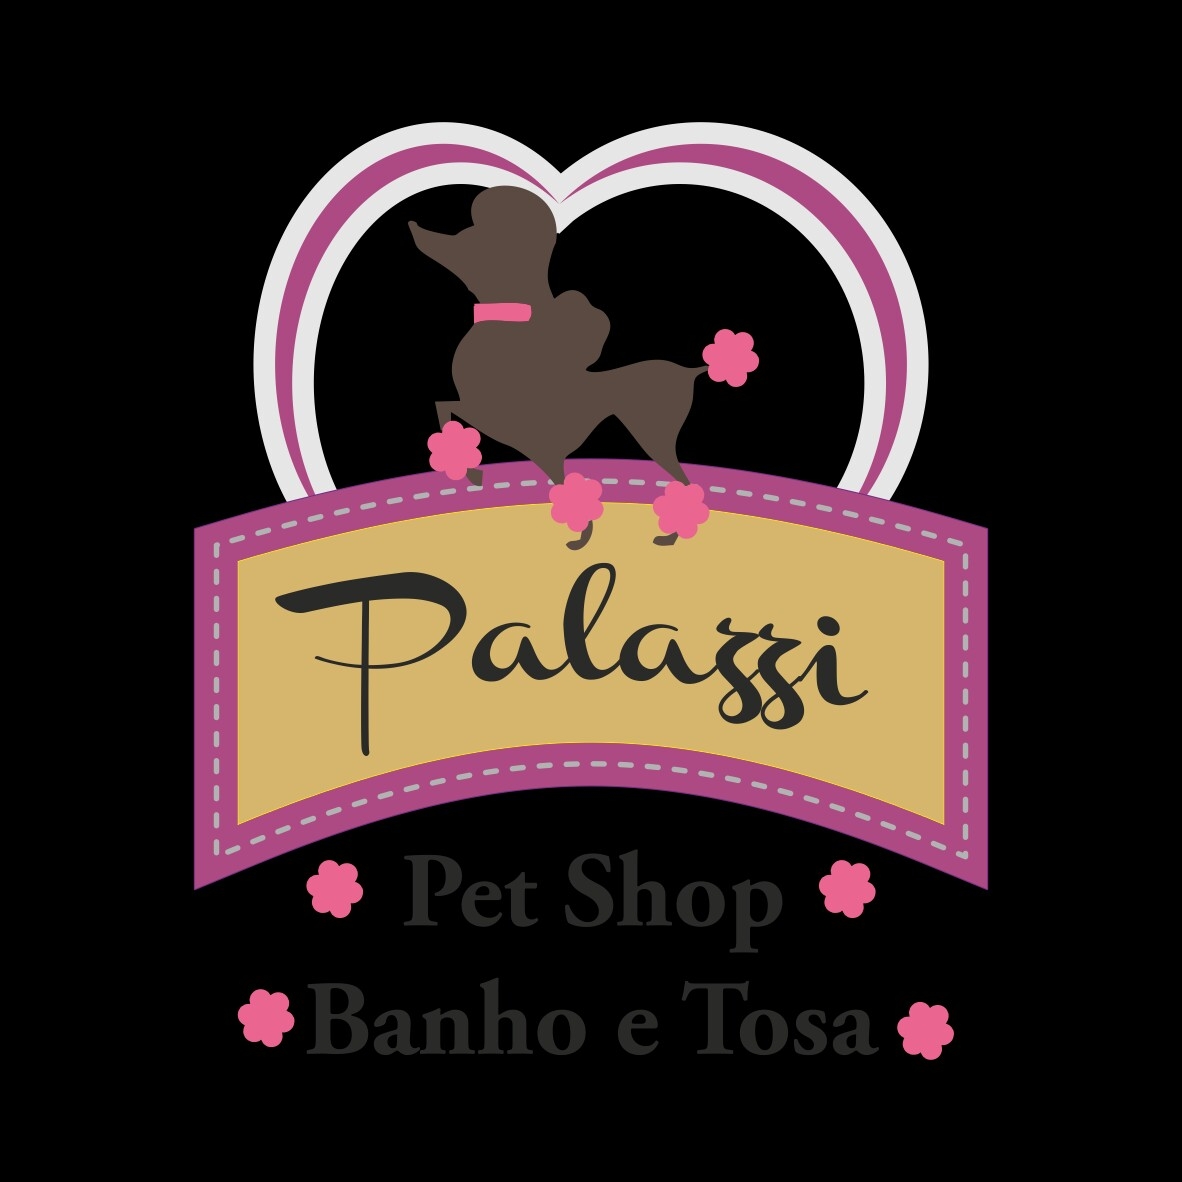 Palazzi Pet Shop Banho e Tosa